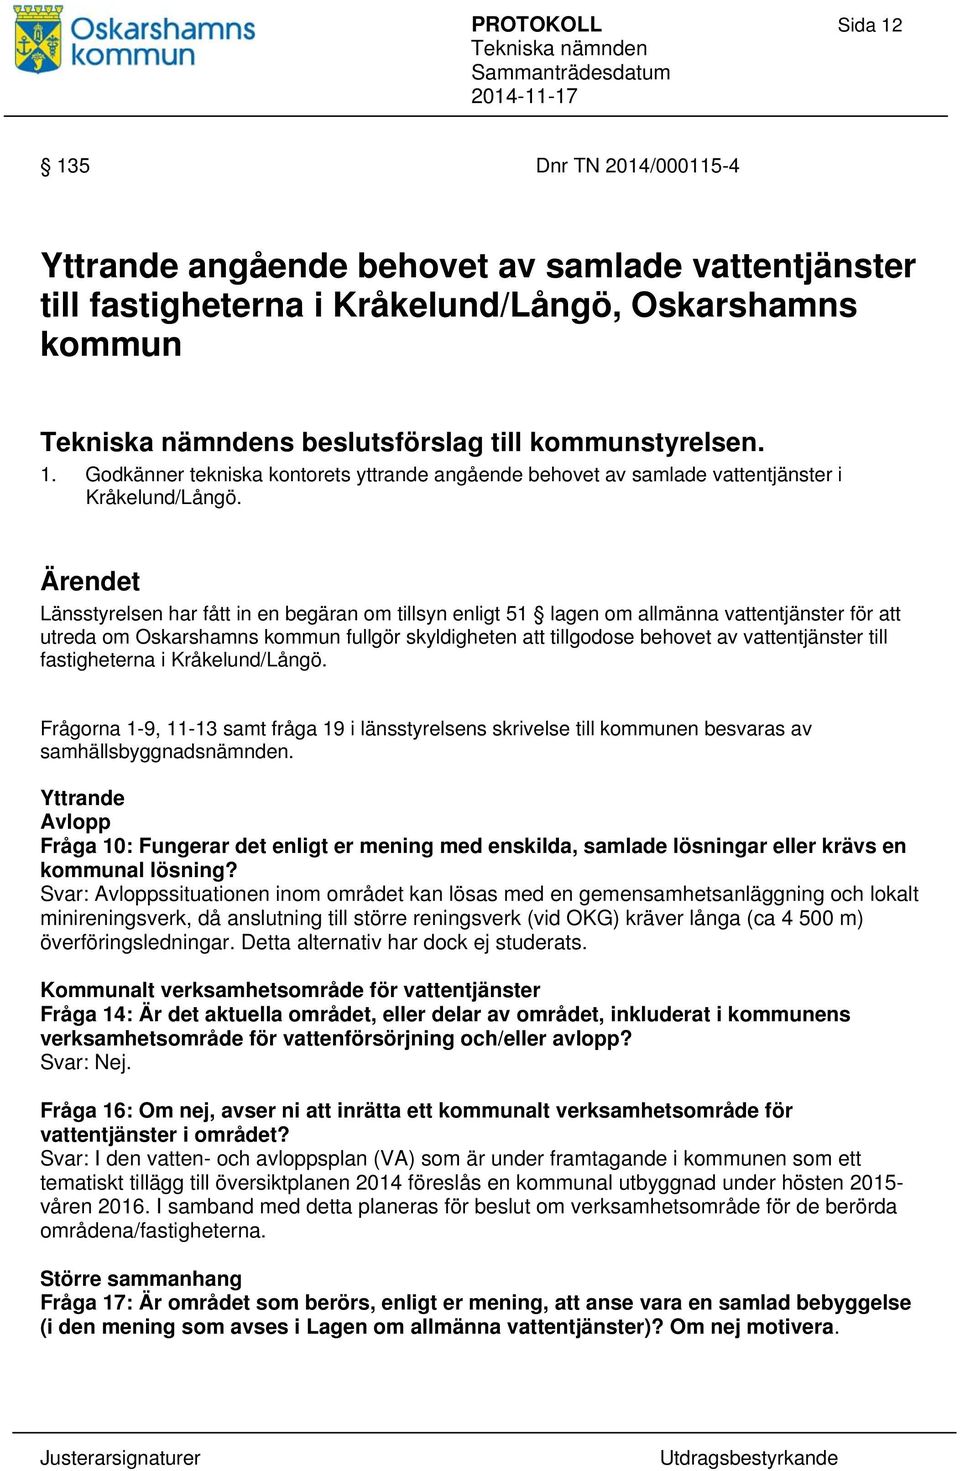 till fastigheterna i Kråkelund/Långö. Frågorna 1-9, 11-13 samt fråga 19 i länsstyrelsens skrivelse till kommunen besvaras av samhällsbyggnadsnämnden.